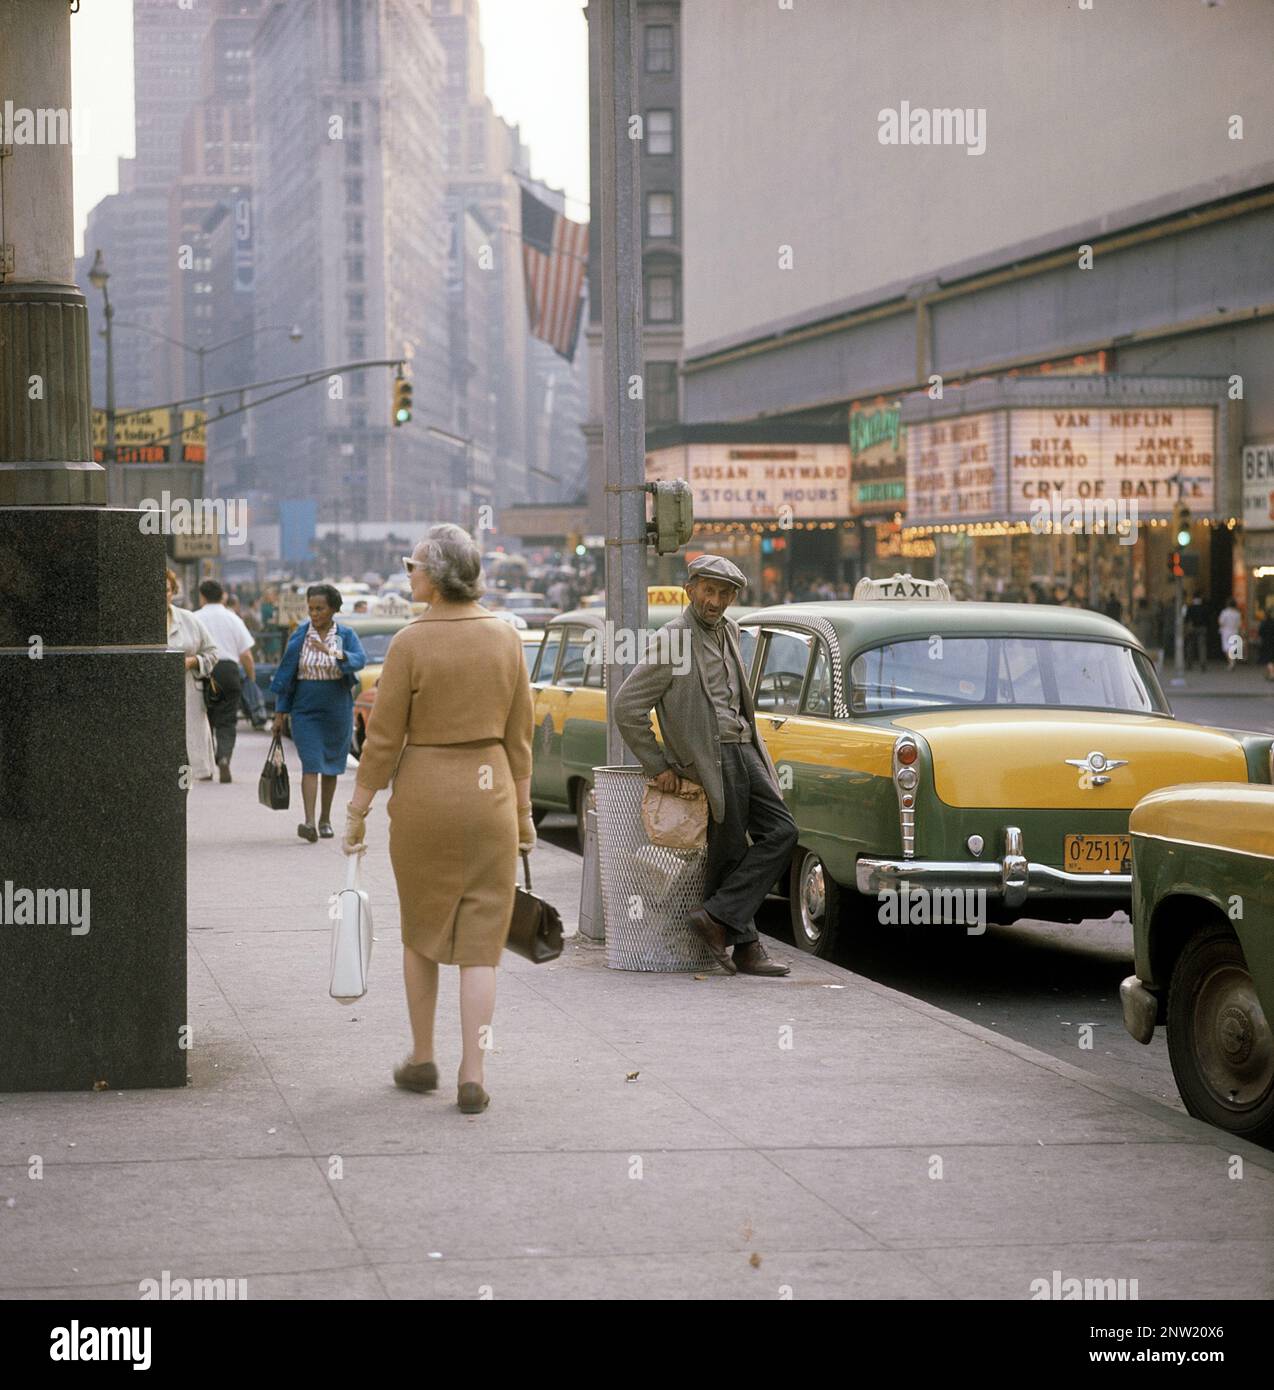 États-Unis New York 1964. Une scène de rue avec des voitures, des bus et des taxis en voiture sur Broadway dans le quartier de Times Square sur Manhattan. Les salles de cinéma affichent des heures de vol et un cri de bataille, tous deux créés aux États-Unis en octobre-novembre 1963. Devant une femme marchant sur le trottoir avec un homme avec un sac en papier dans sa main, habituellement un signe qu'il contient une sorte d'alcool. Crédit Roland Palm réf. 5-39-4 Banque D'Images